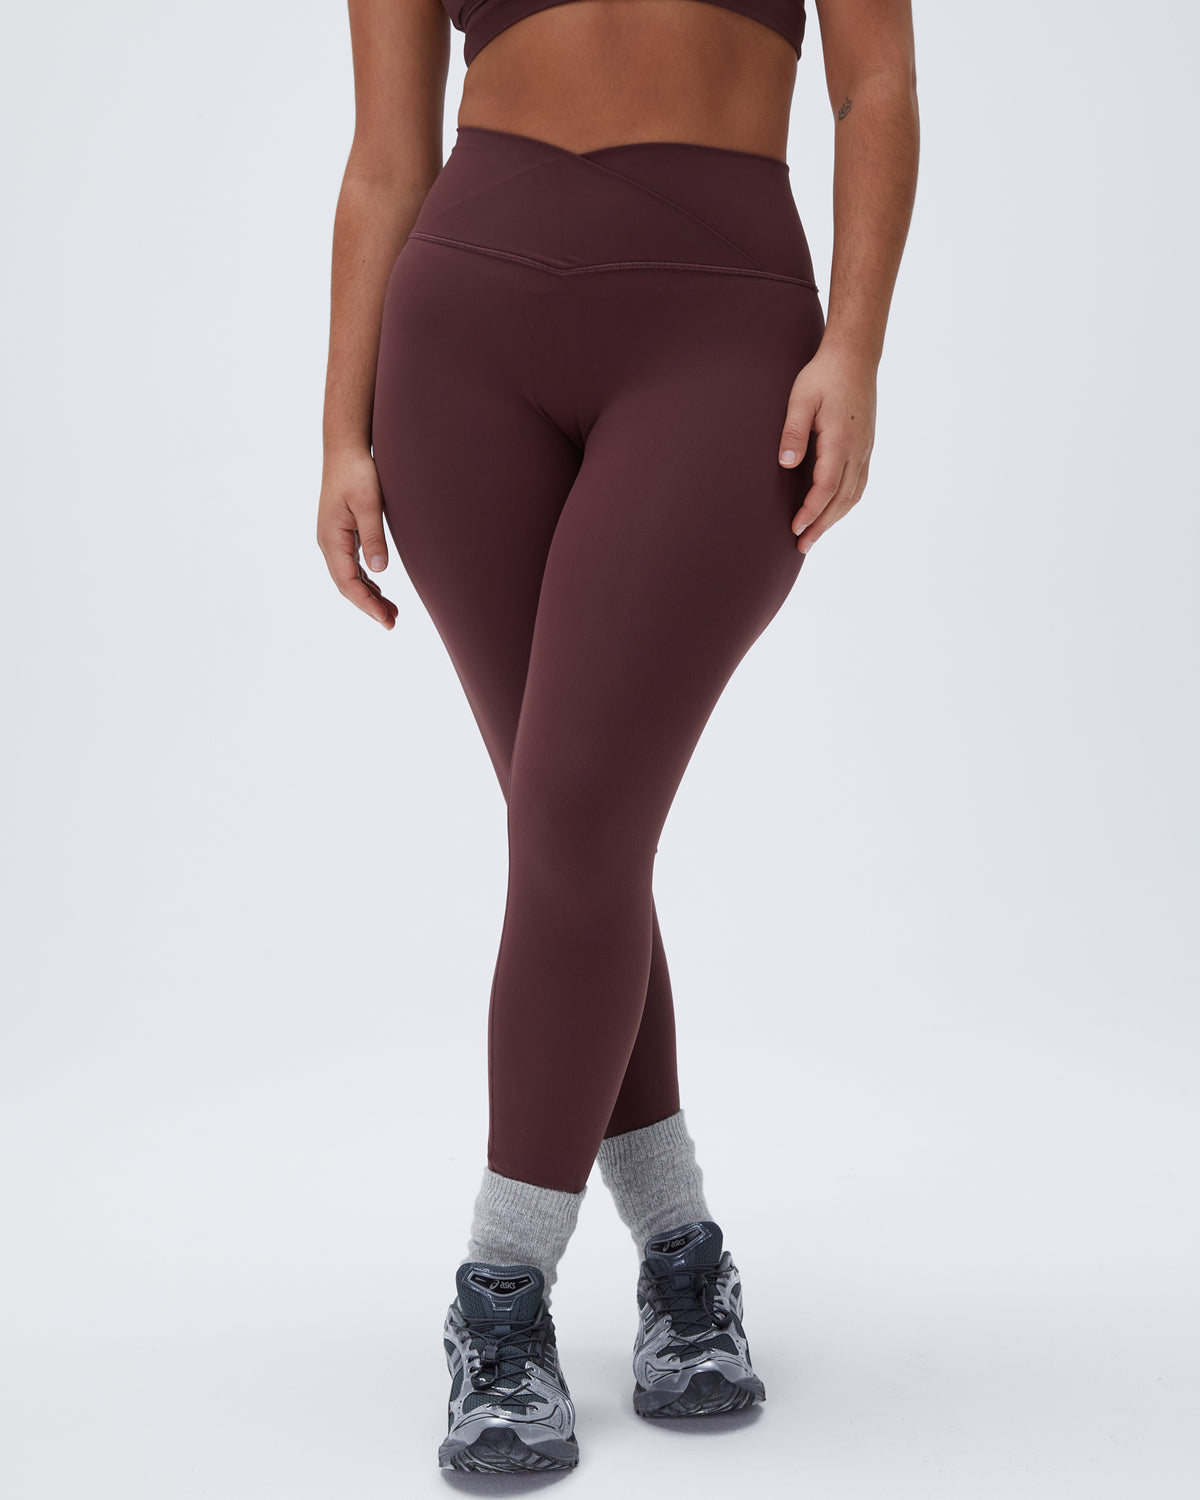 Maroon Legging Yoga Pants Leggings Cotton Blend Slex Full Length  Stretchable Her